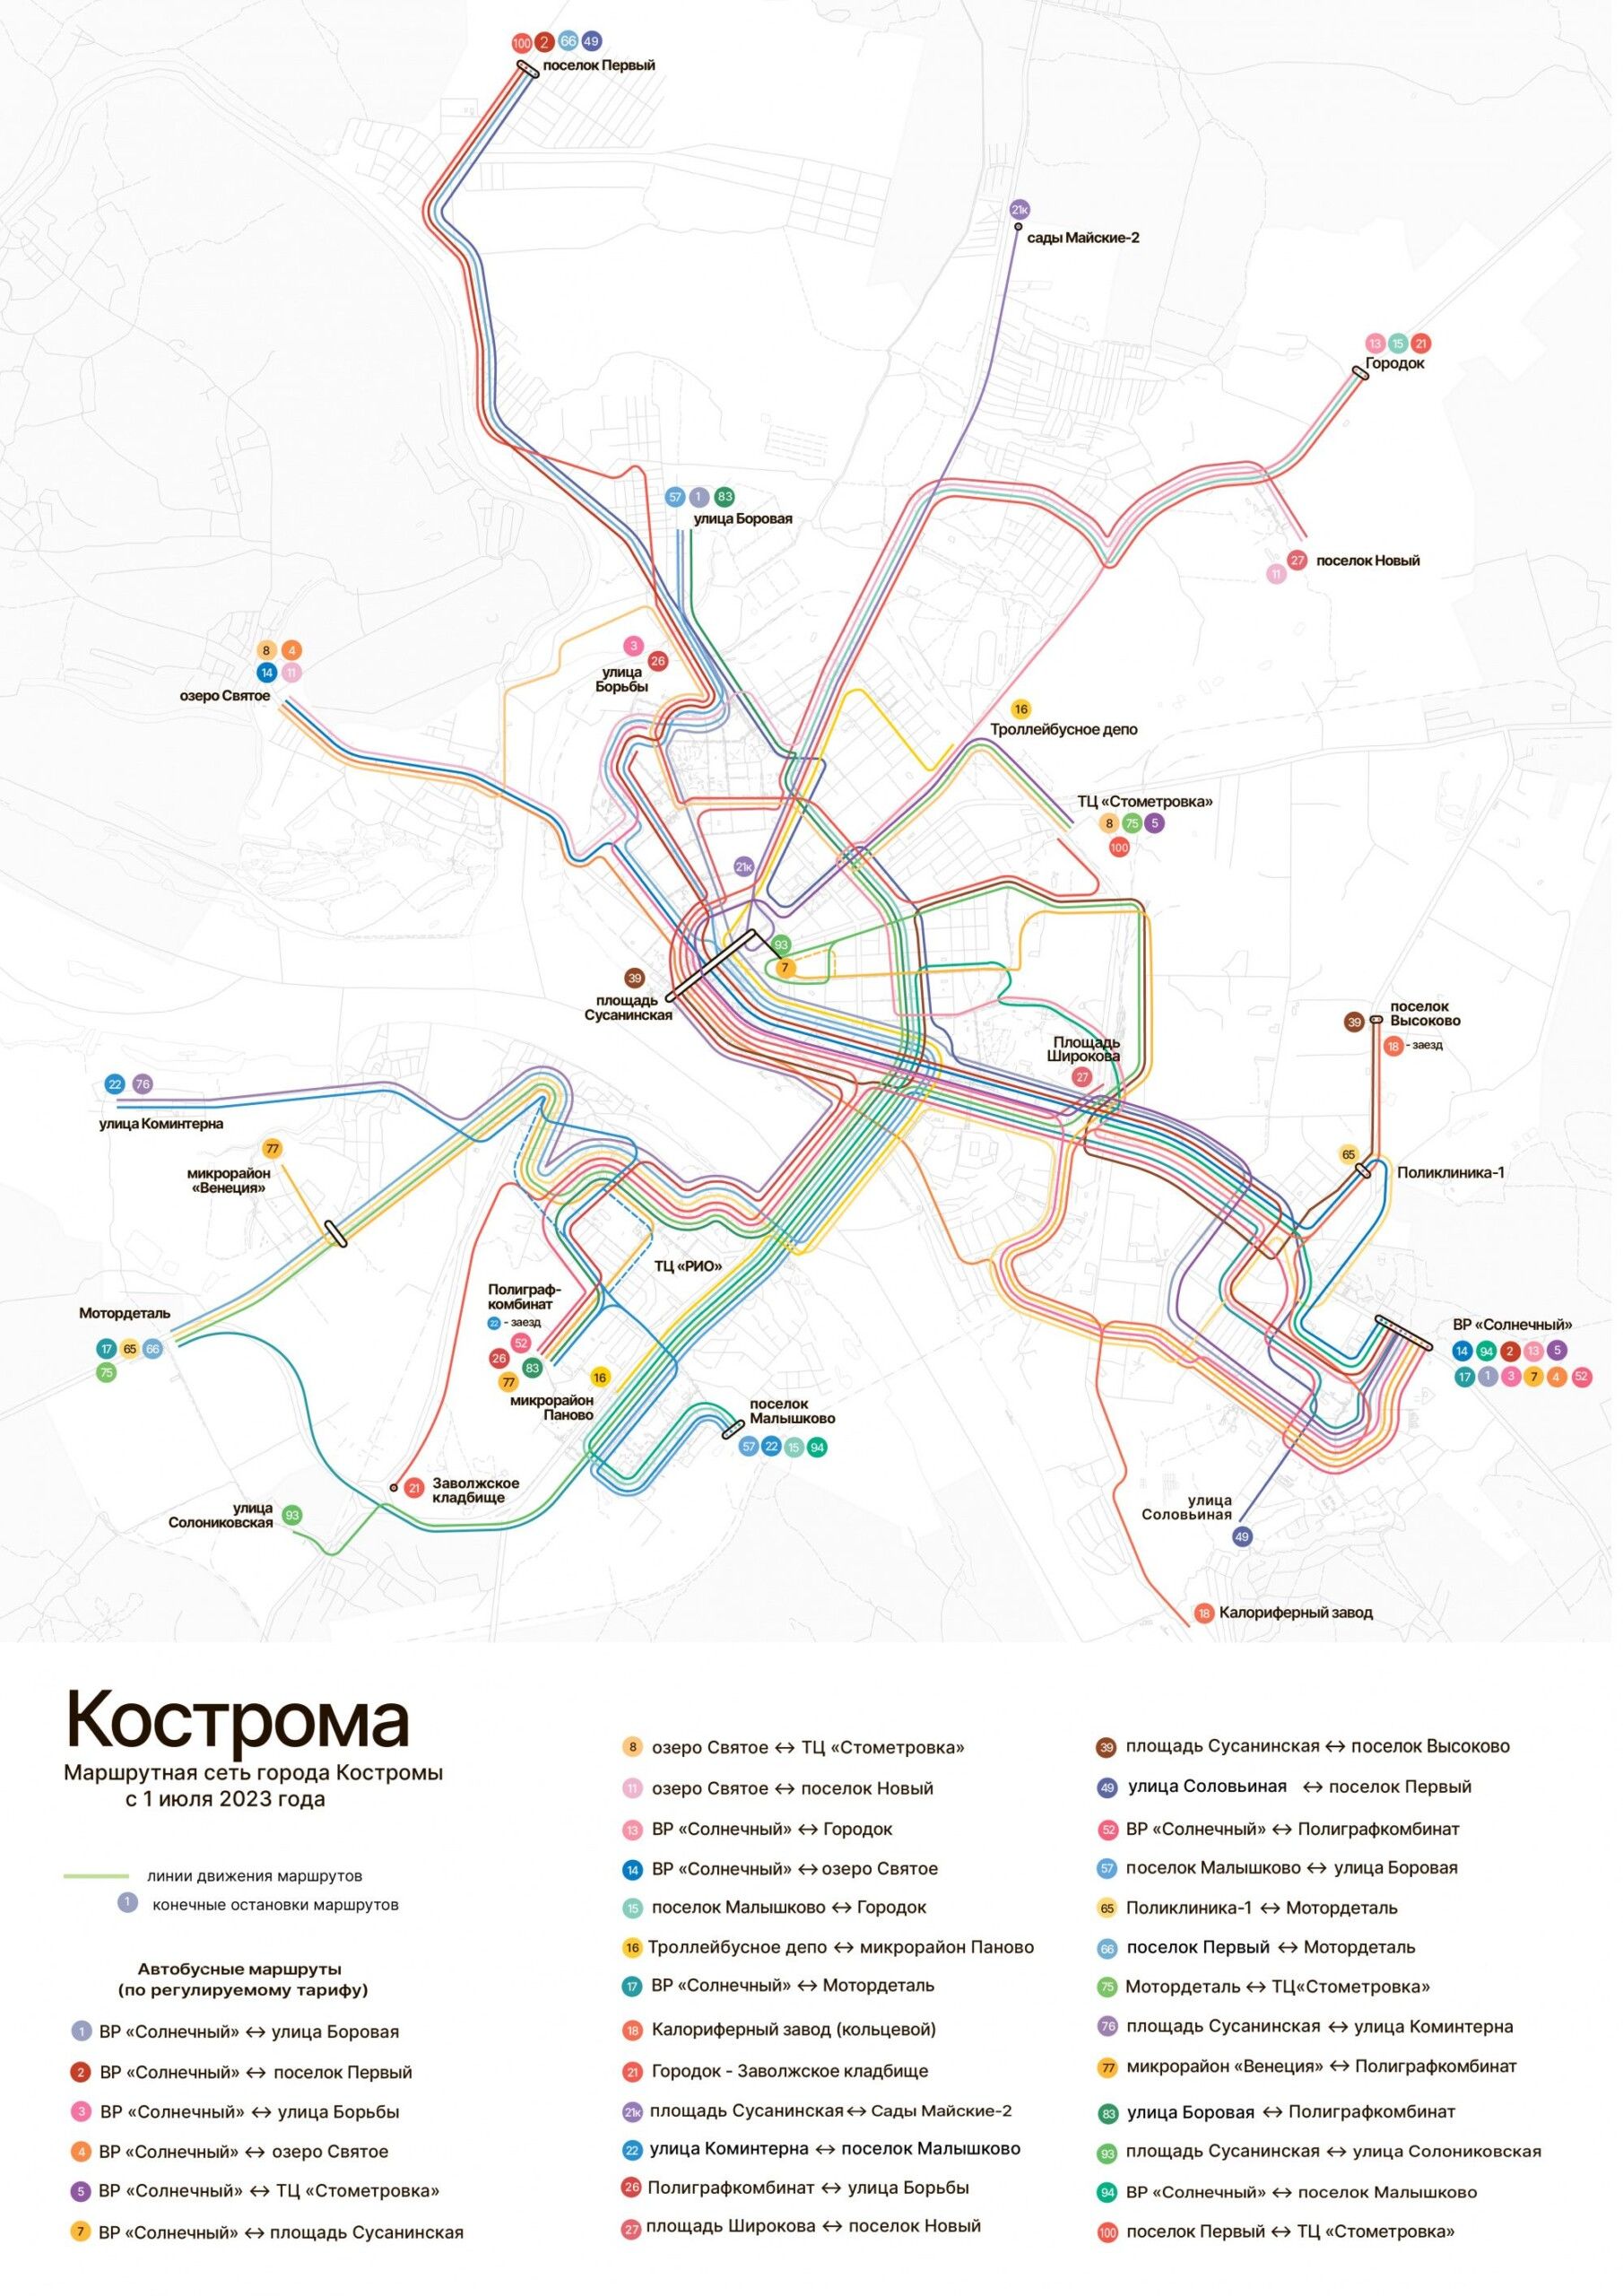 Новая схема движения транспорта в Костроме: скачиваем и разглядываем